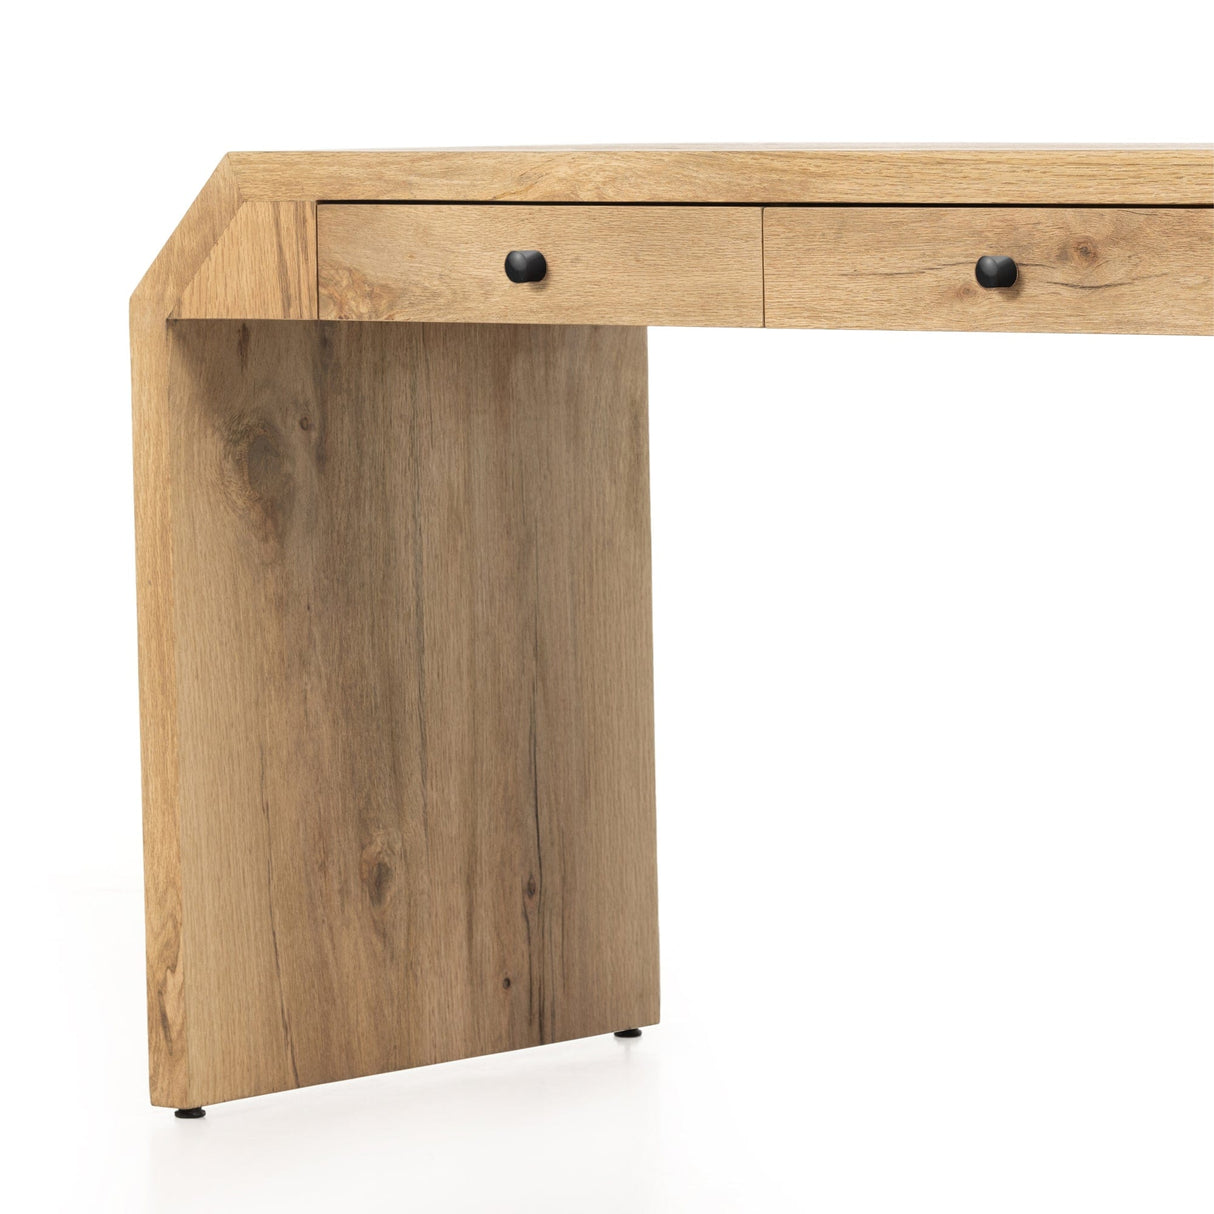 Four Hands Frasier Desk-Natural Oak Furniture four-hands-230406-001